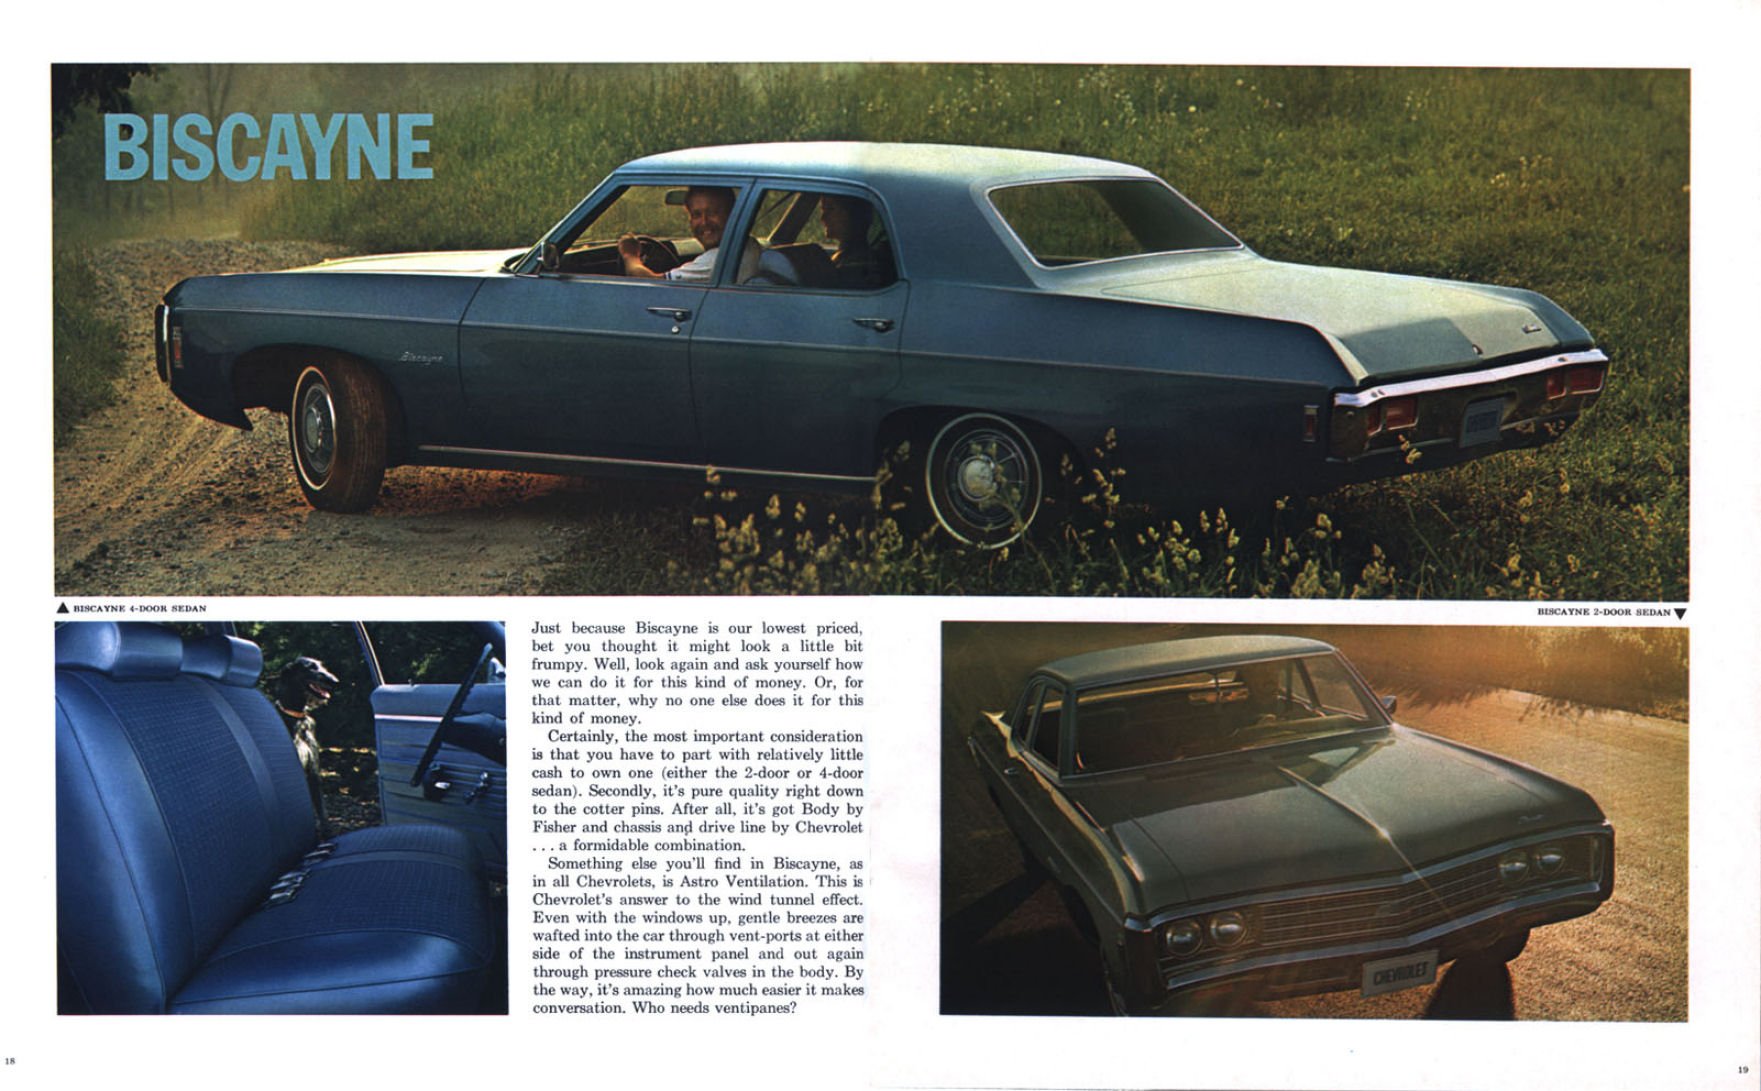 1969 Chevrolet Full Size-18-19